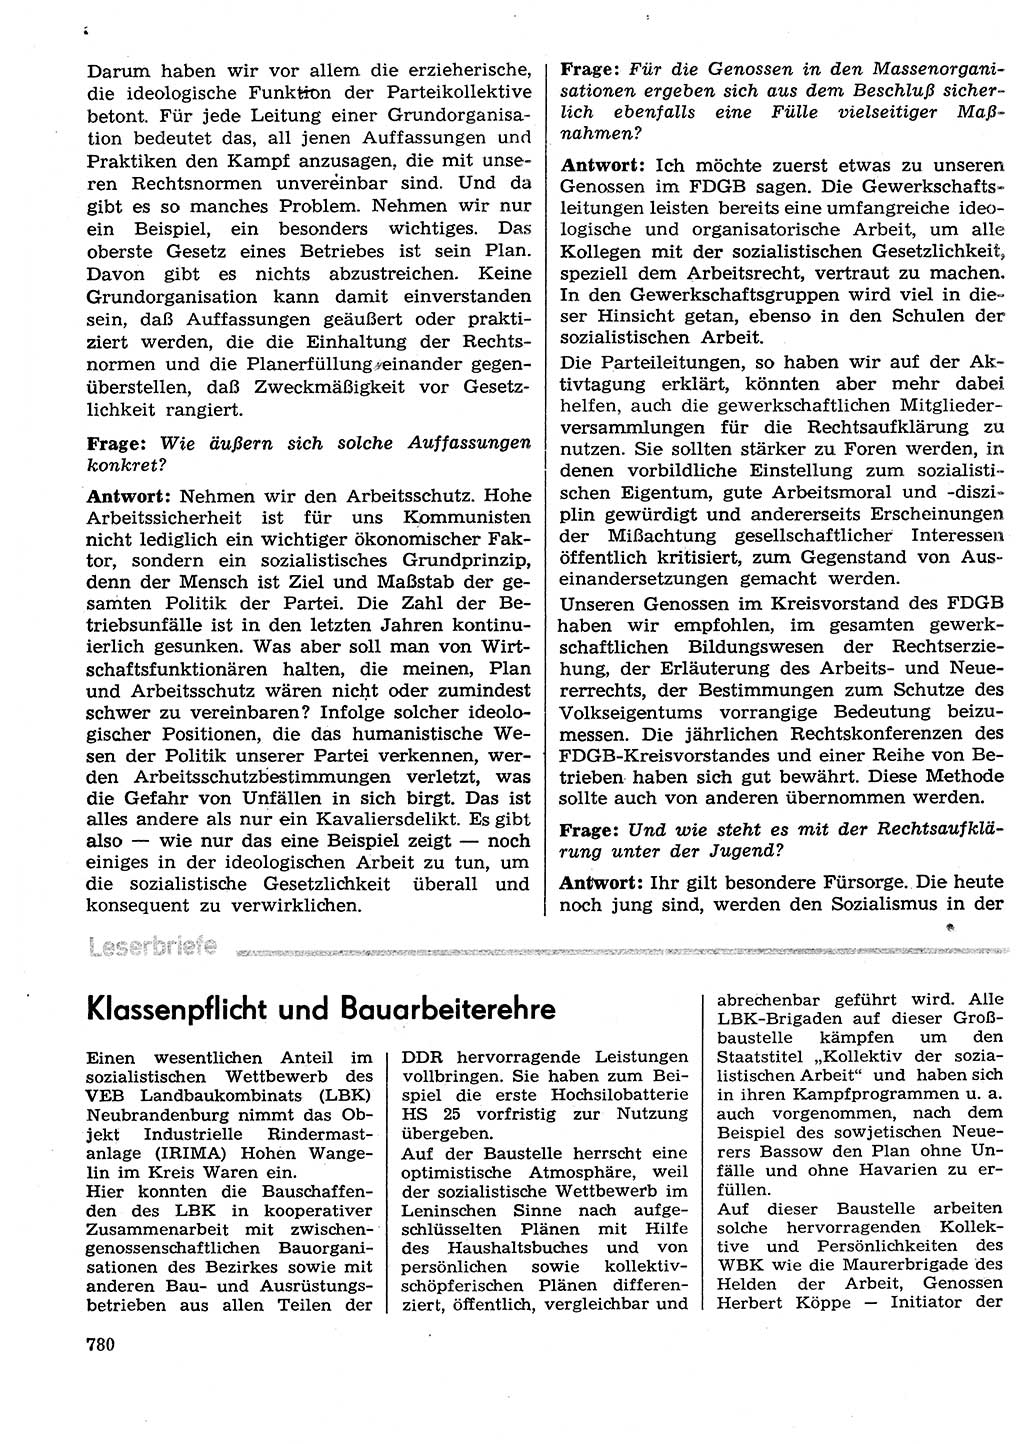 Neuer Weg (NW), Organ des Zentralkomitees (ZK) der SED (Sozialistische Einheitspartei Deutschlands) für Fragen des Parteilebens, 29. Jahrgang [Deutsche Demokratische Republik (DDR)] 1974, Seite 780 (NW ZK SED DDR 1974, S. 780)